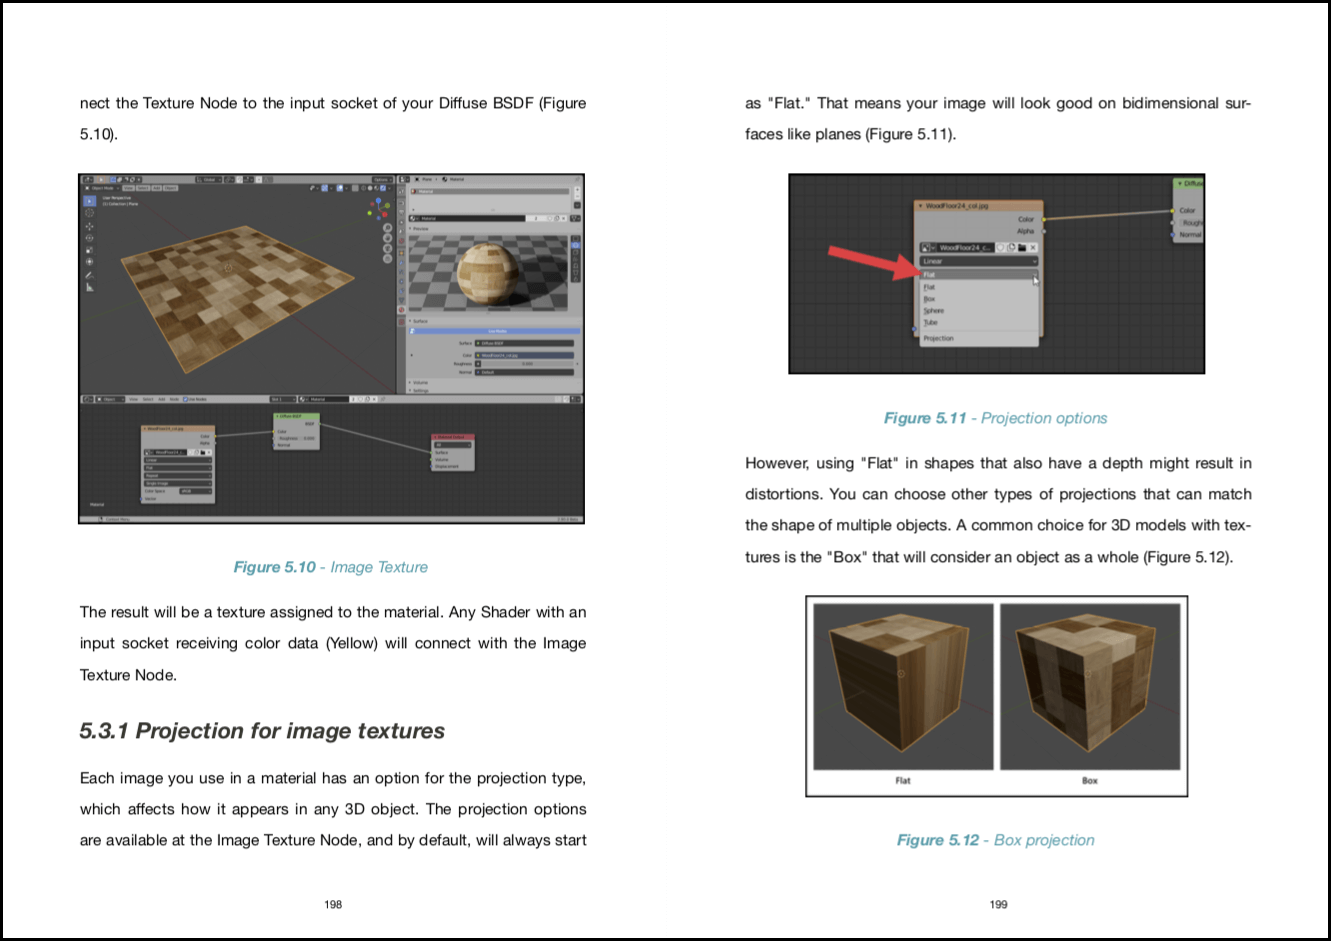 blender 3d animation basics pdf